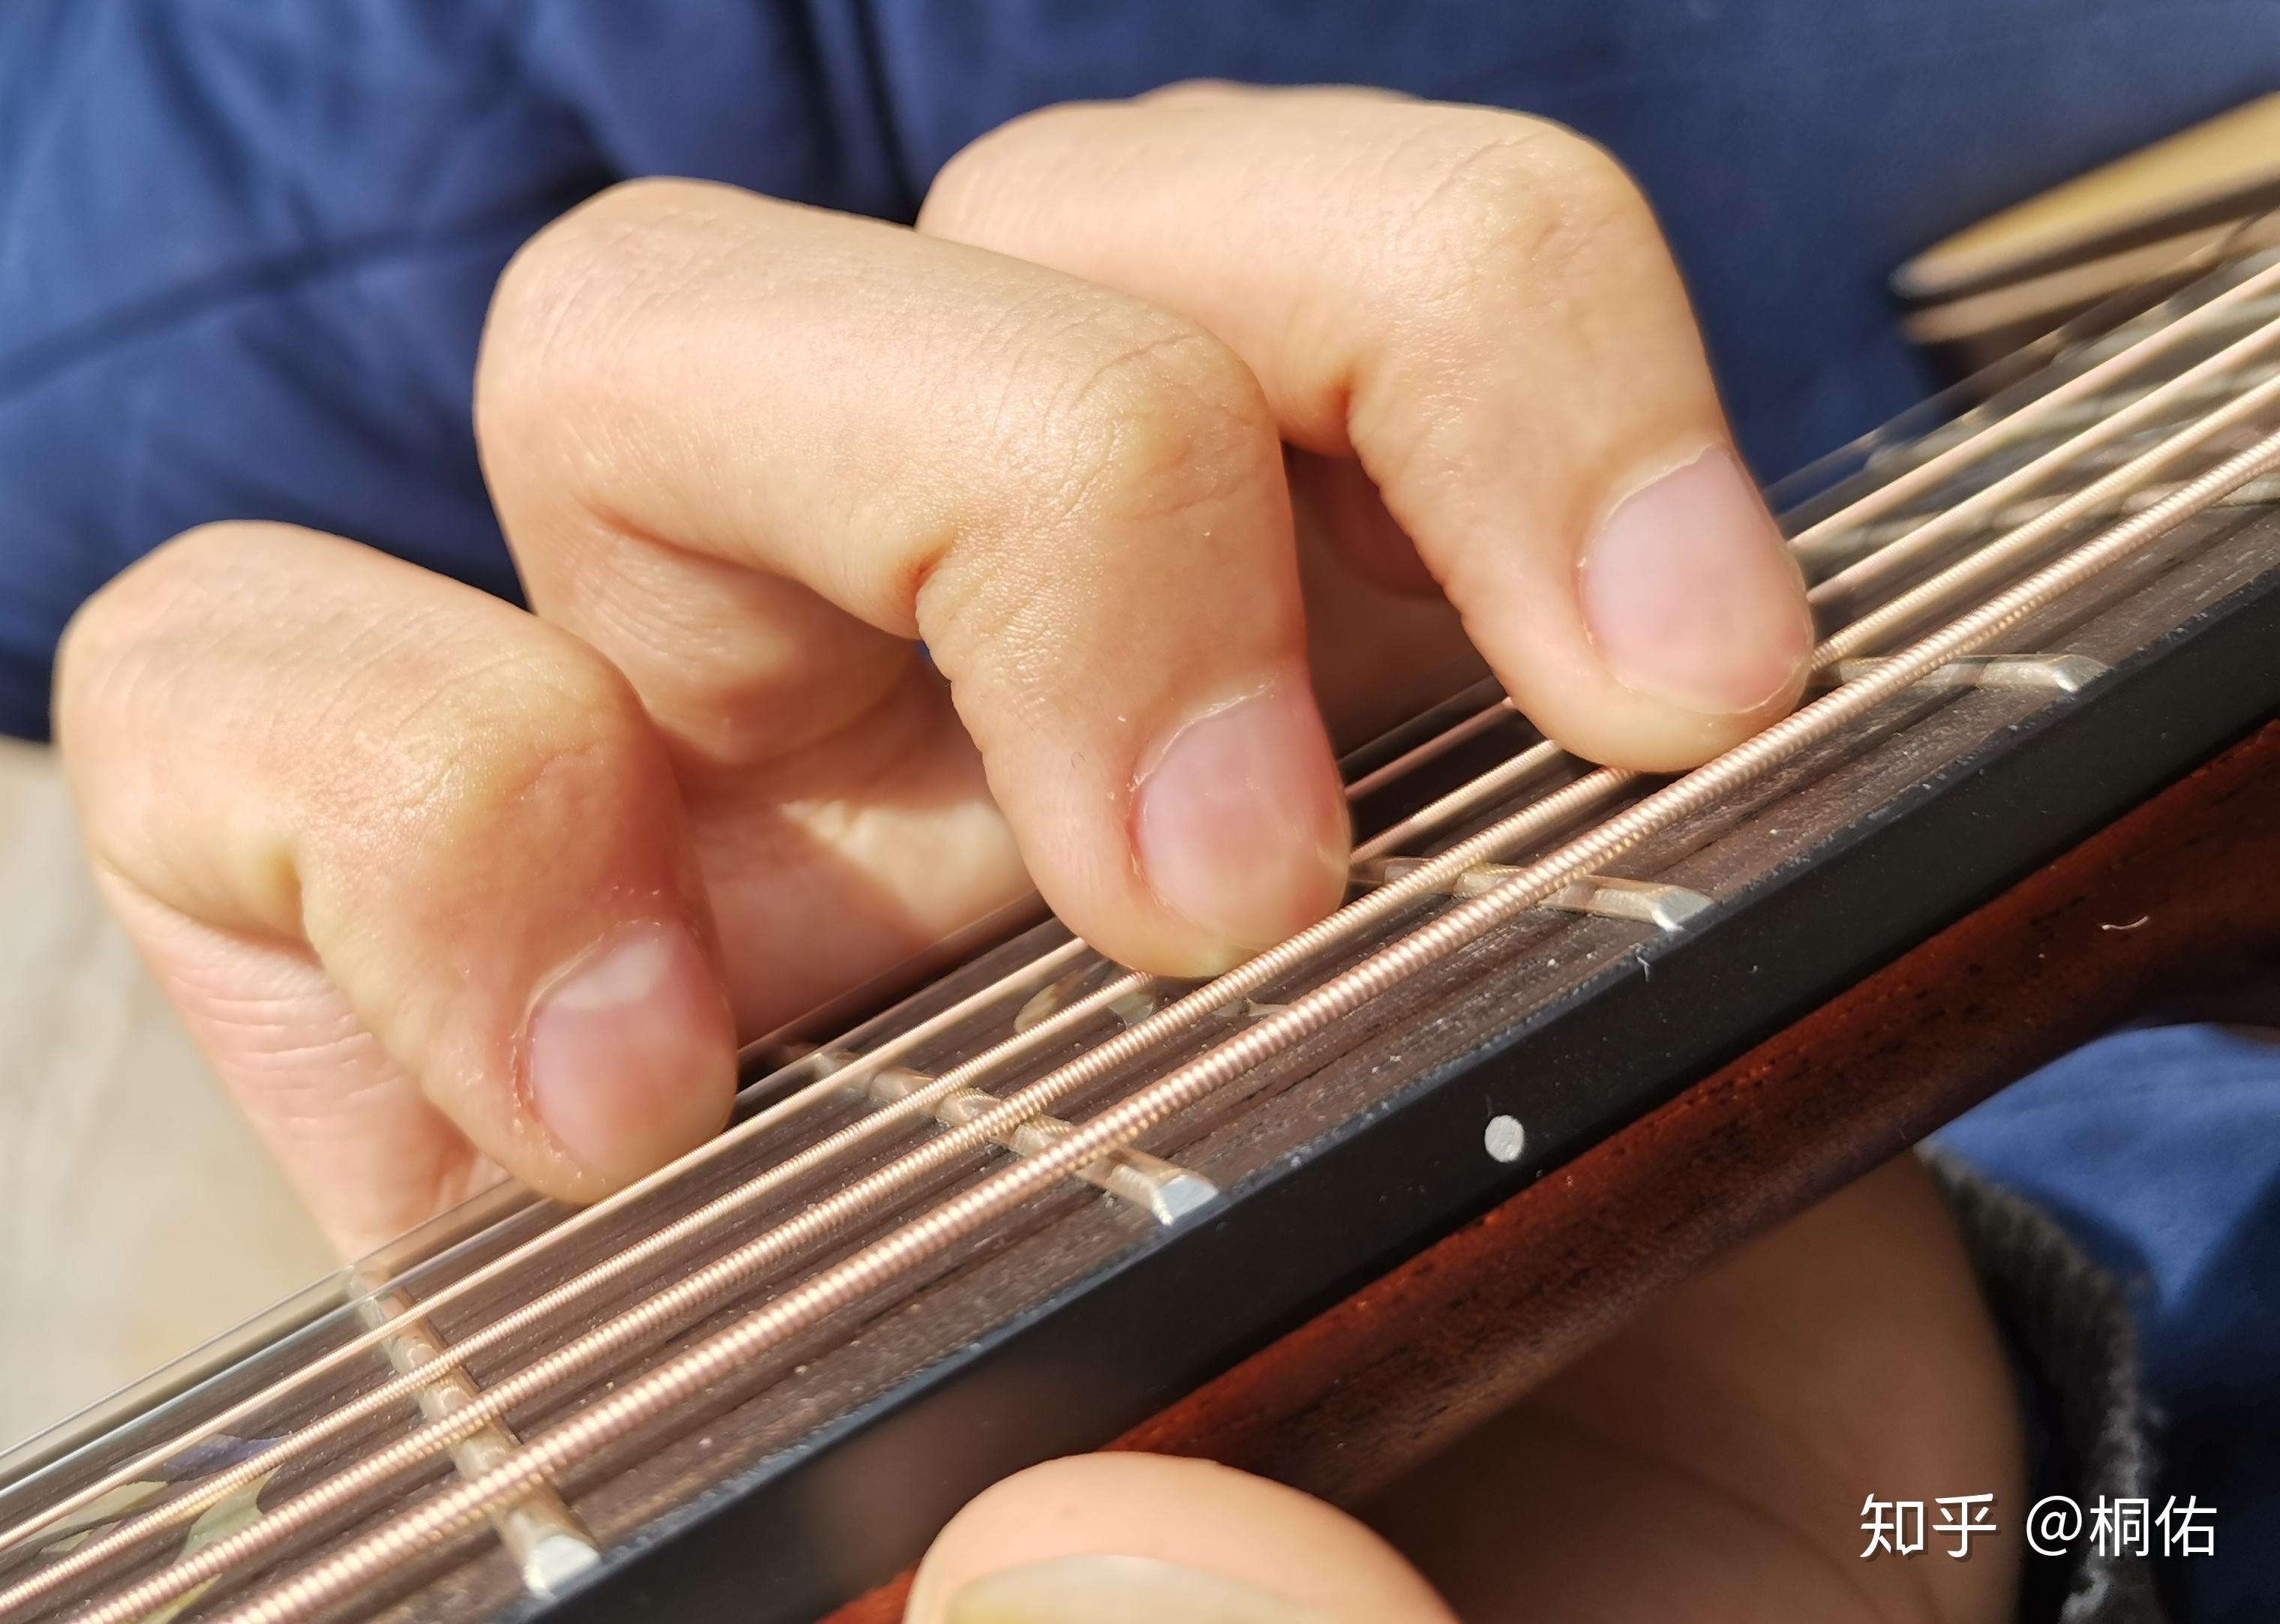 吉他按弦手指第二关节伸直是否会对手指造成伤害如腱鞘炎